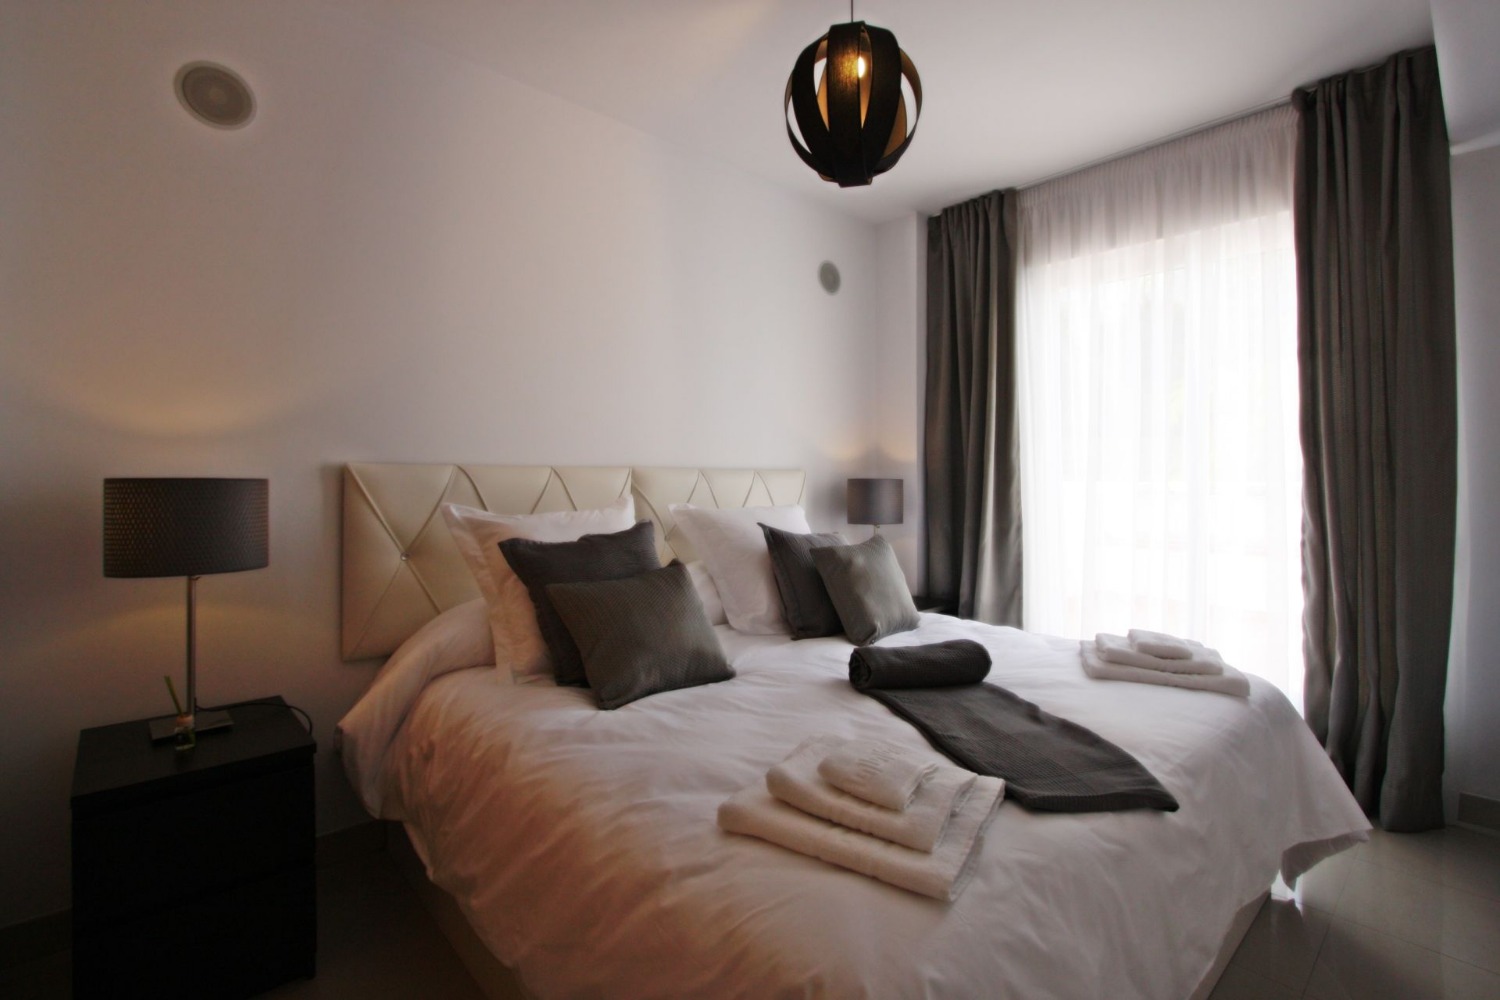 3 bedroom duplex, in excellent luxury community